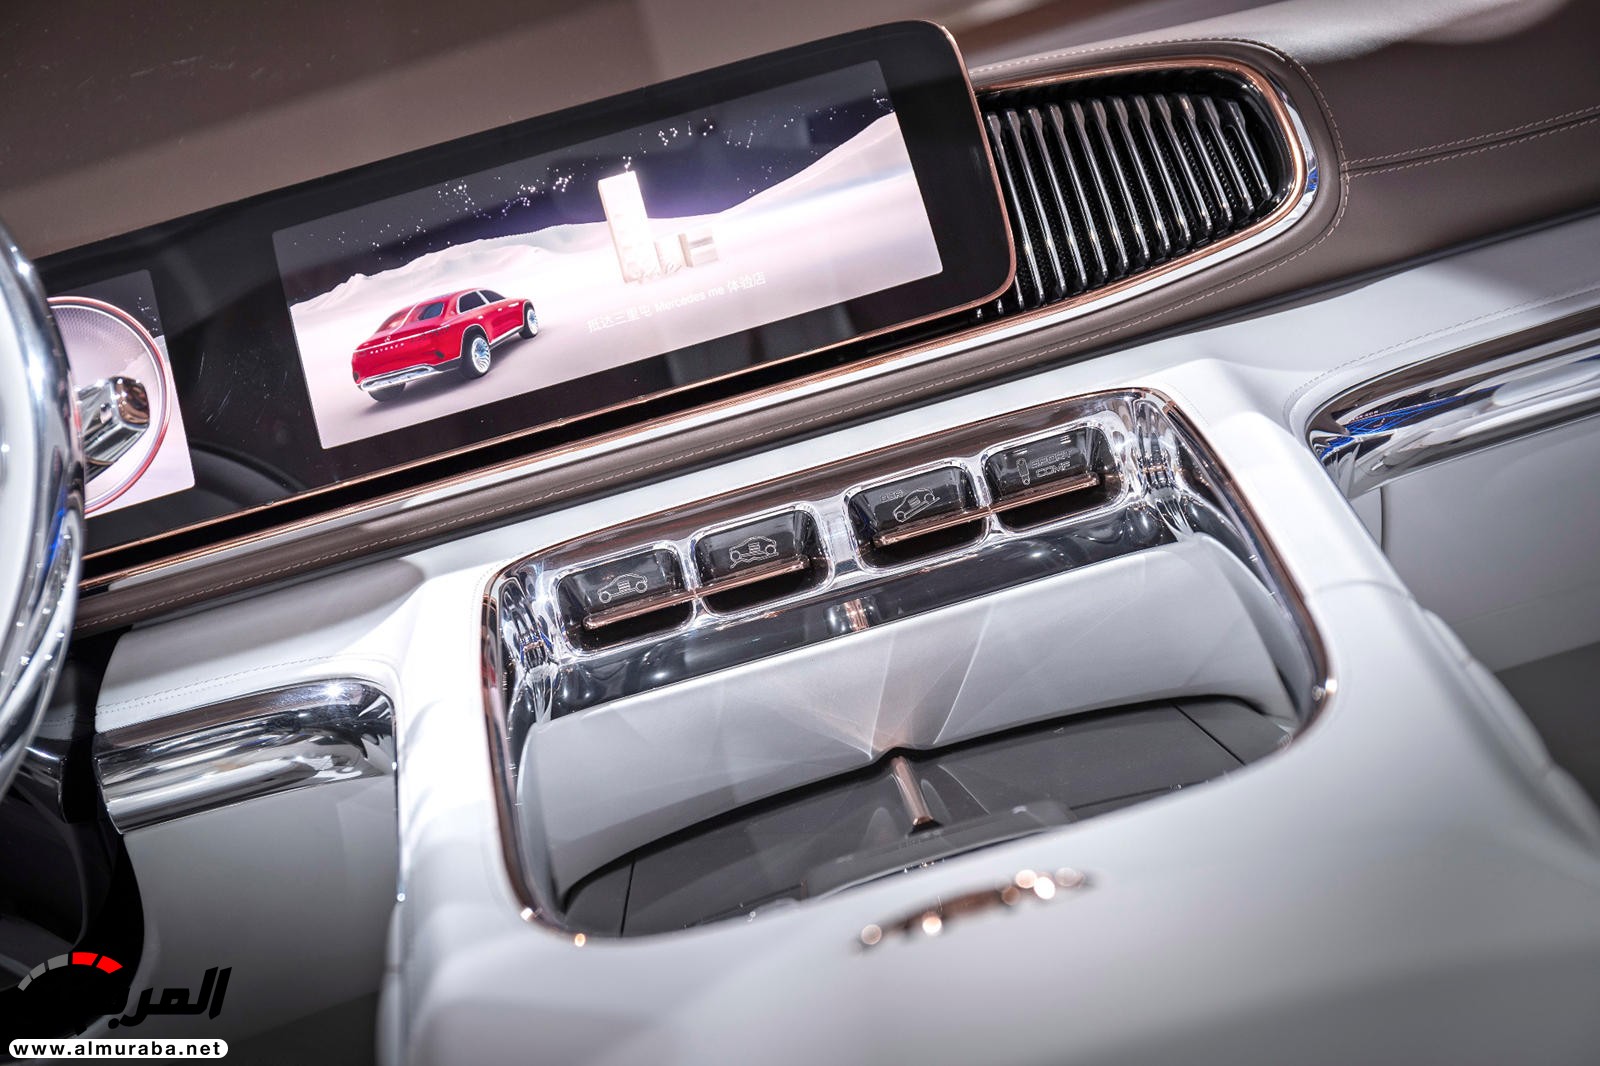 "بالصور" نظرة على مرسيدس مايباخ SUV الاختبارية وفخامتها الداخلية والخارجية 74